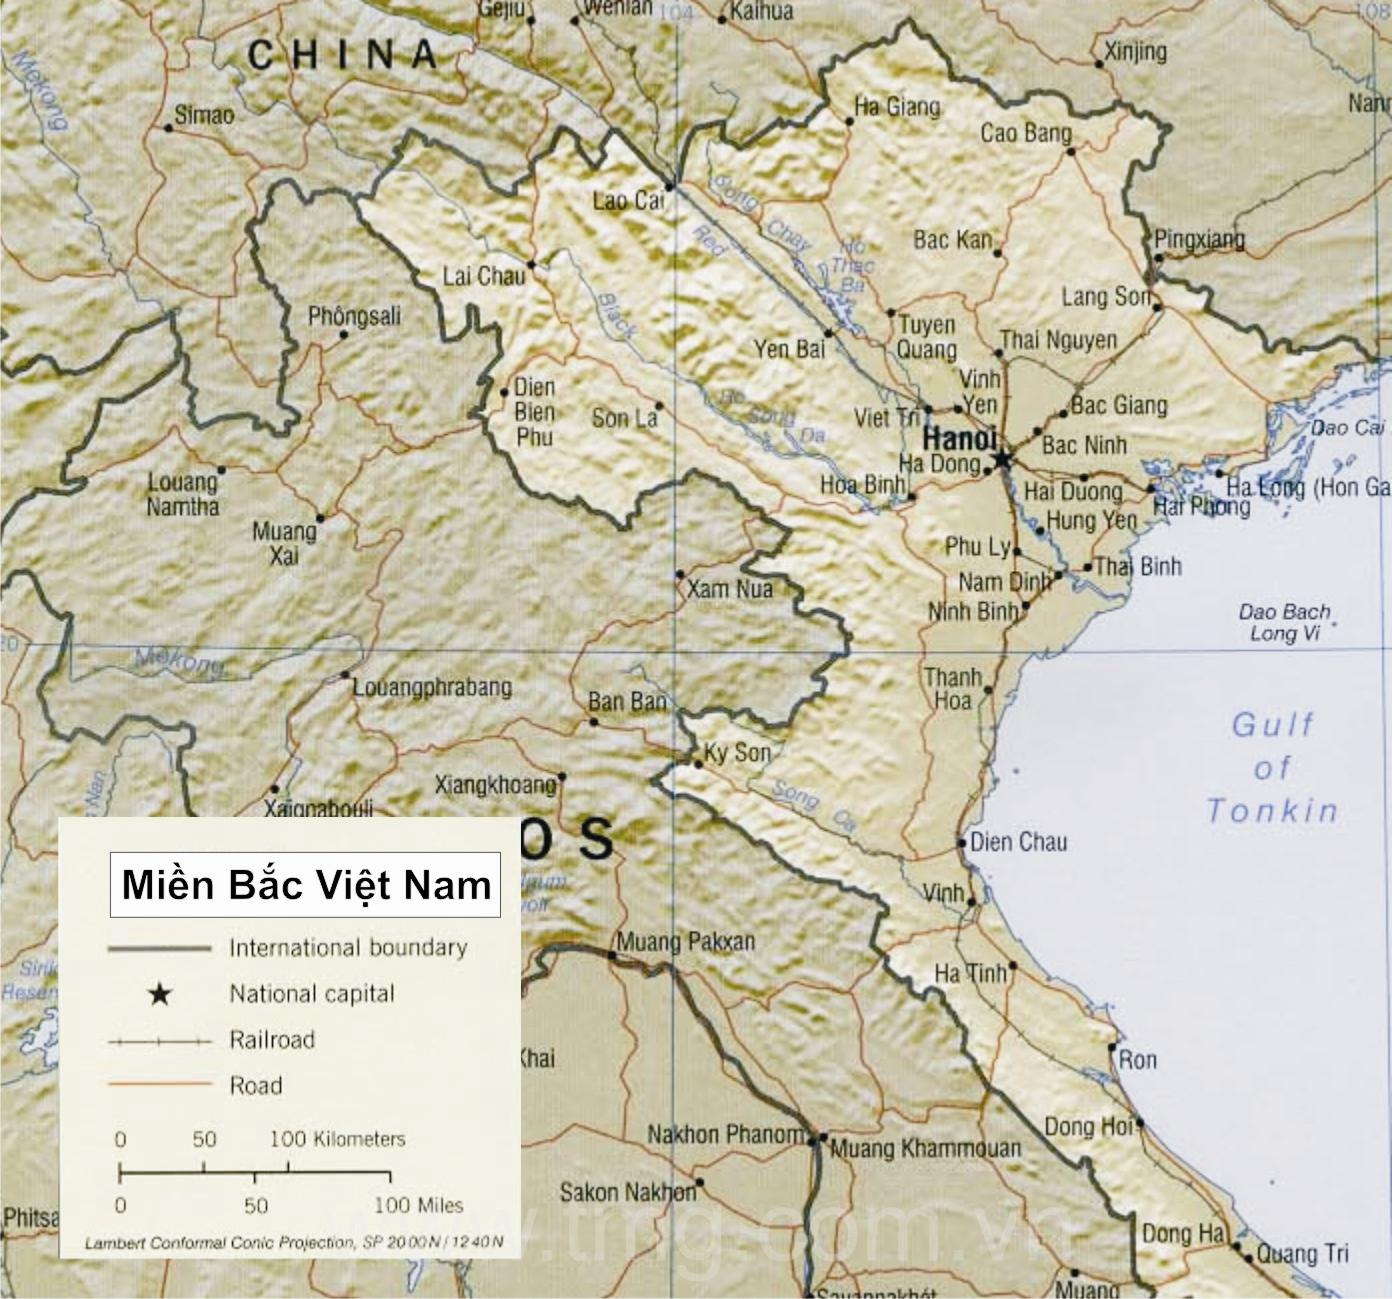 Miền Bắc Việt Nam Wikipedia: Tìm hiểu thêm về lịch sử, địa lý và văn hóa của Miền Bắc Việt Nam thông qua Wikipedia. Bạn có thể tìm thấy những thông tin hữu ích về các tỉnh thành, các di tích lịch sử và những món ăn đặc sản nổi tiếng. Từ đó, bạn sẽ hiểu thêm về nền văn hoá đa dạng và sự phát triển nhanh chóng của khu vực này.